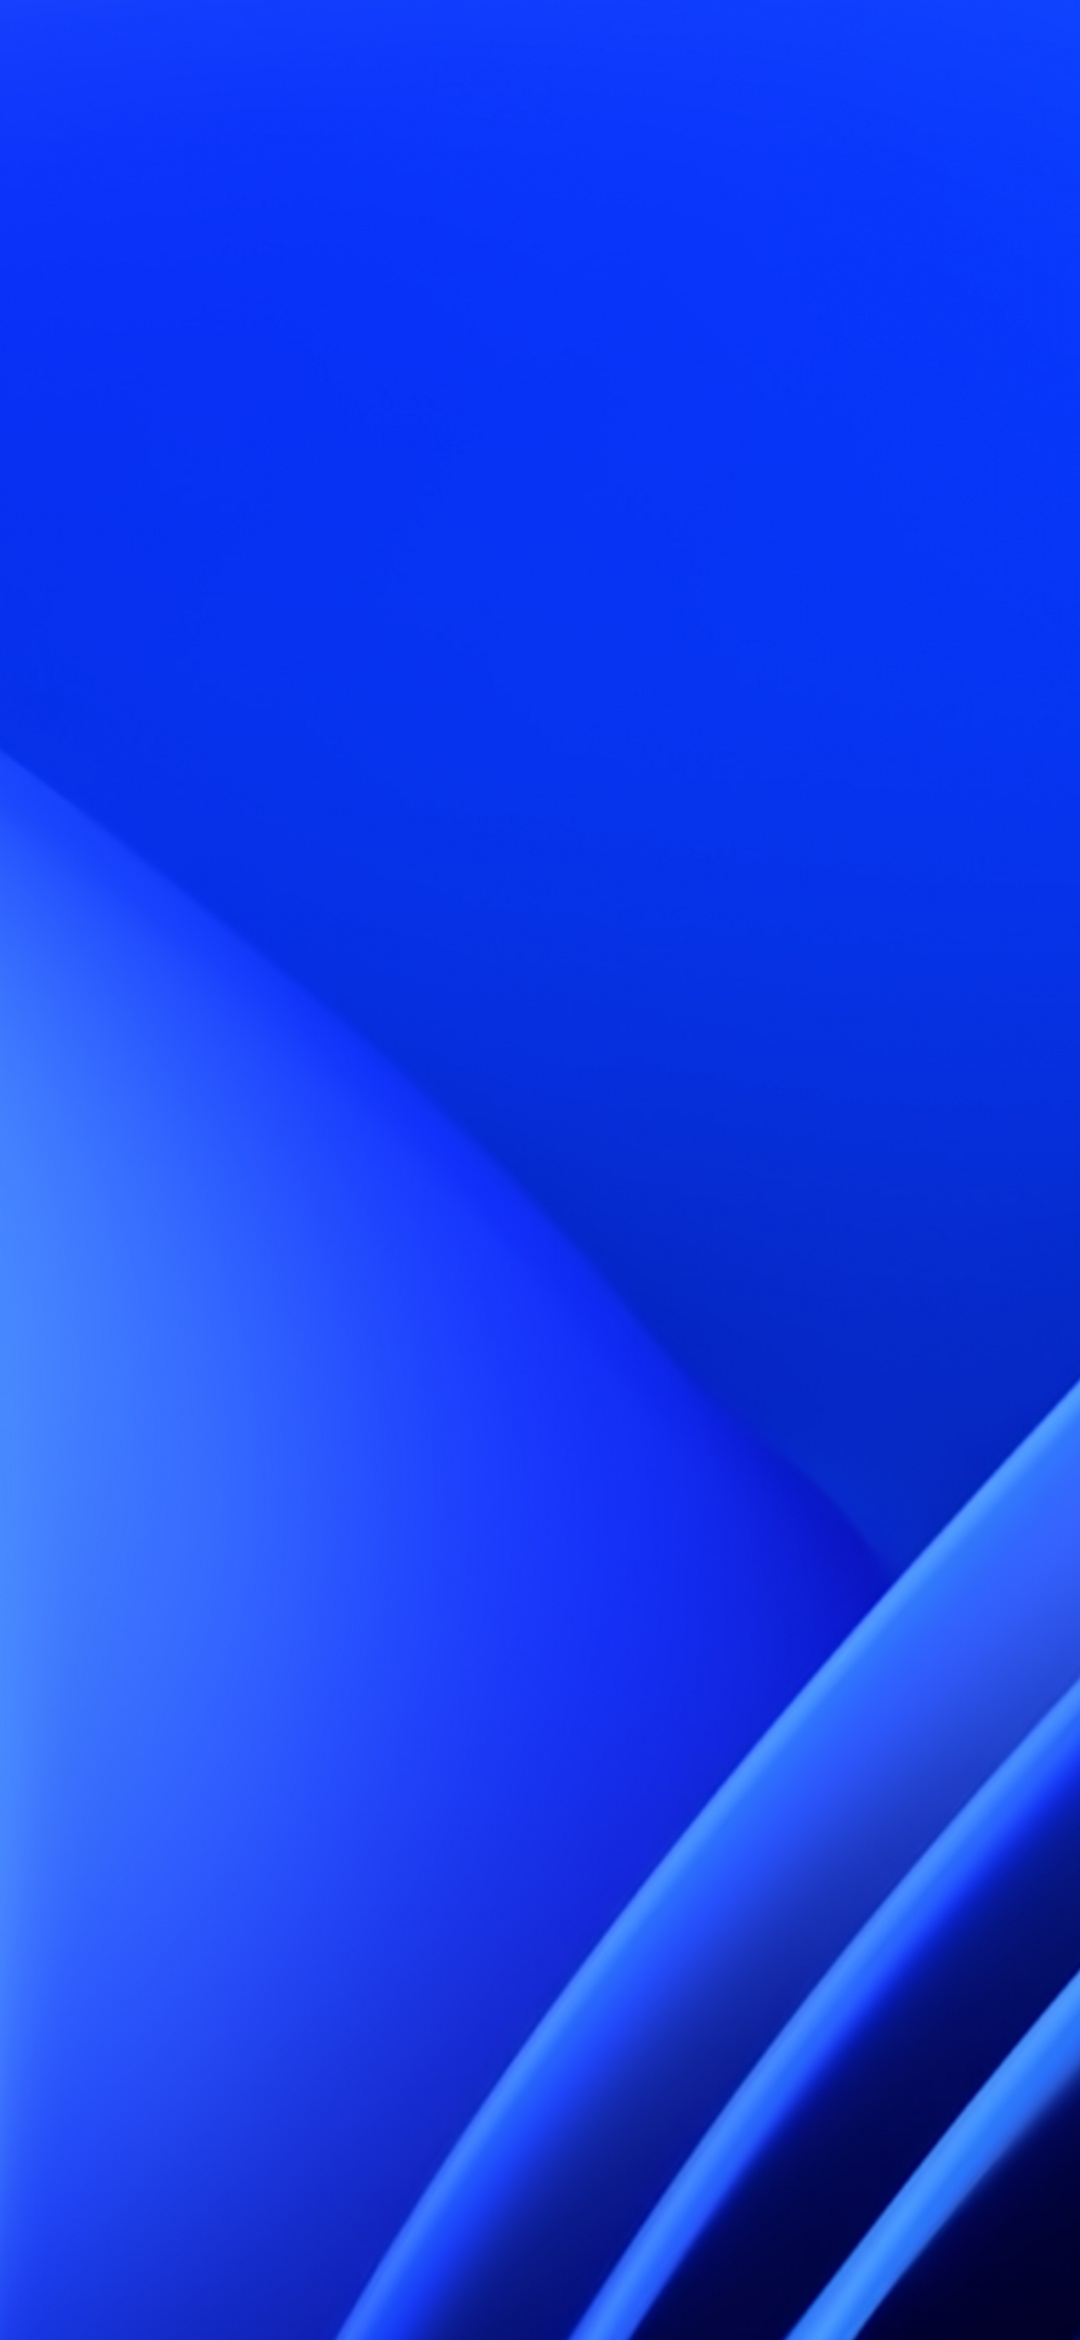 Windows 11 đã chính thức ra mắt và hình nền màu xanh dương 4K sẵn sàng để thay đổi diện mạo cho máy của bạn. Tận hưởng mức độ chi tiết cực cao và độ sắc nét vượt trội với hình ảnh này, khiến bạn cảm thấy vừa đẹp mắt, vừa thư giãn.